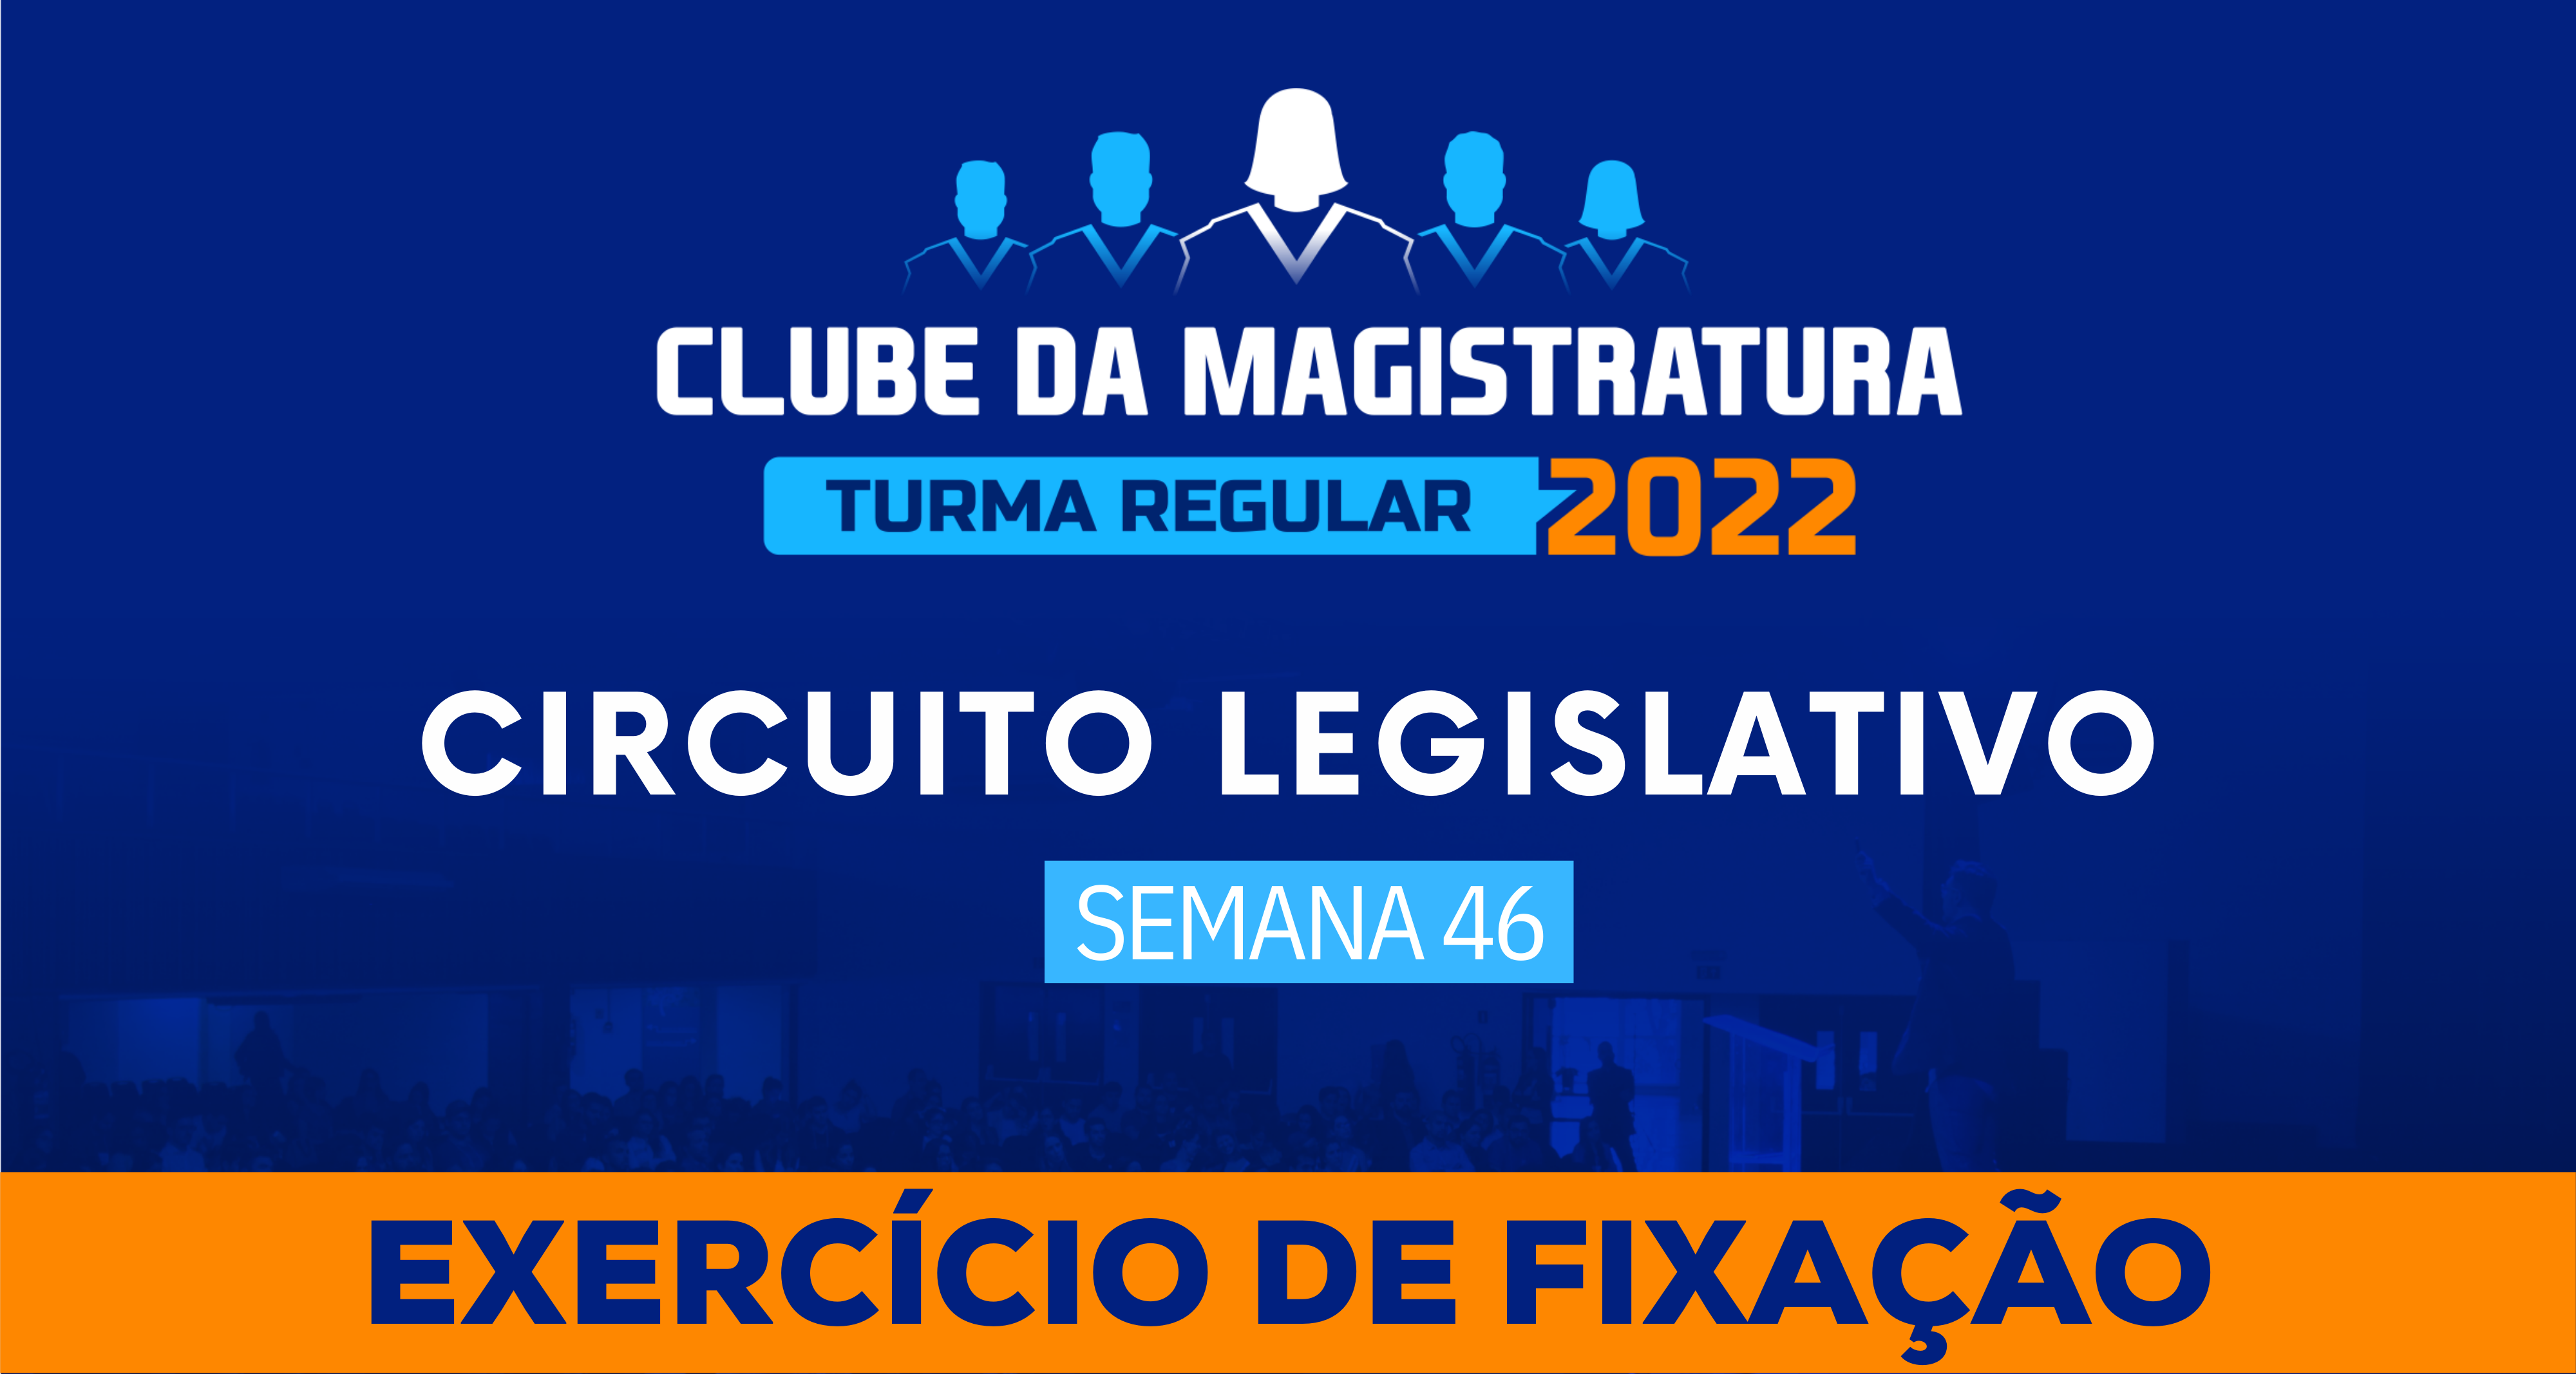 Circuito Legislativo 2022.1 (Clube da Magistratura - Semana 46)